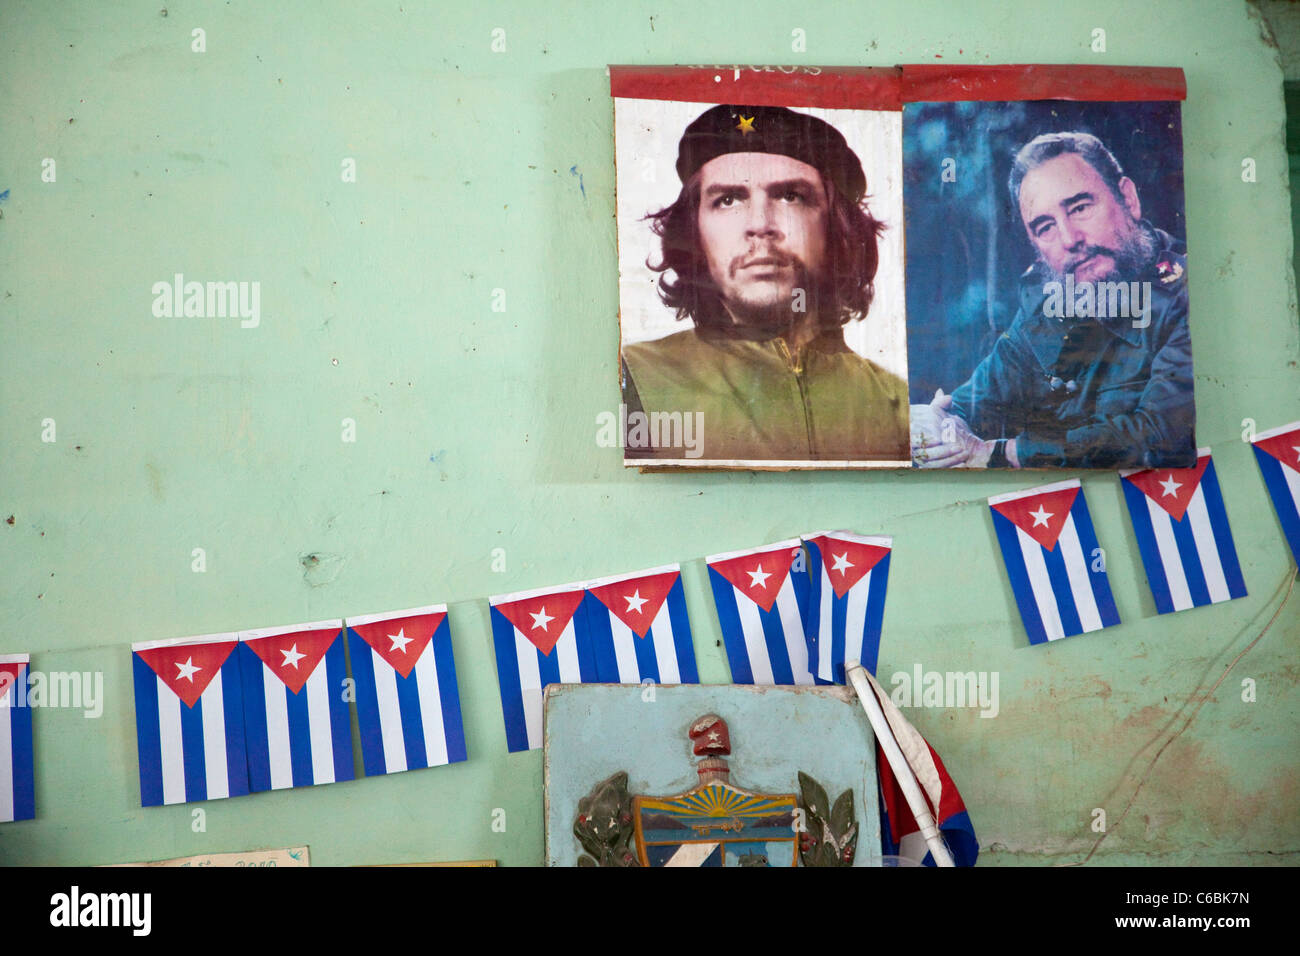 Cuba, La Havane. Les dirigeants de la Révolution, Che Guevara et Fidel Castro. Décoration murale à l'intérieur d'un magasin. Banque D'Images